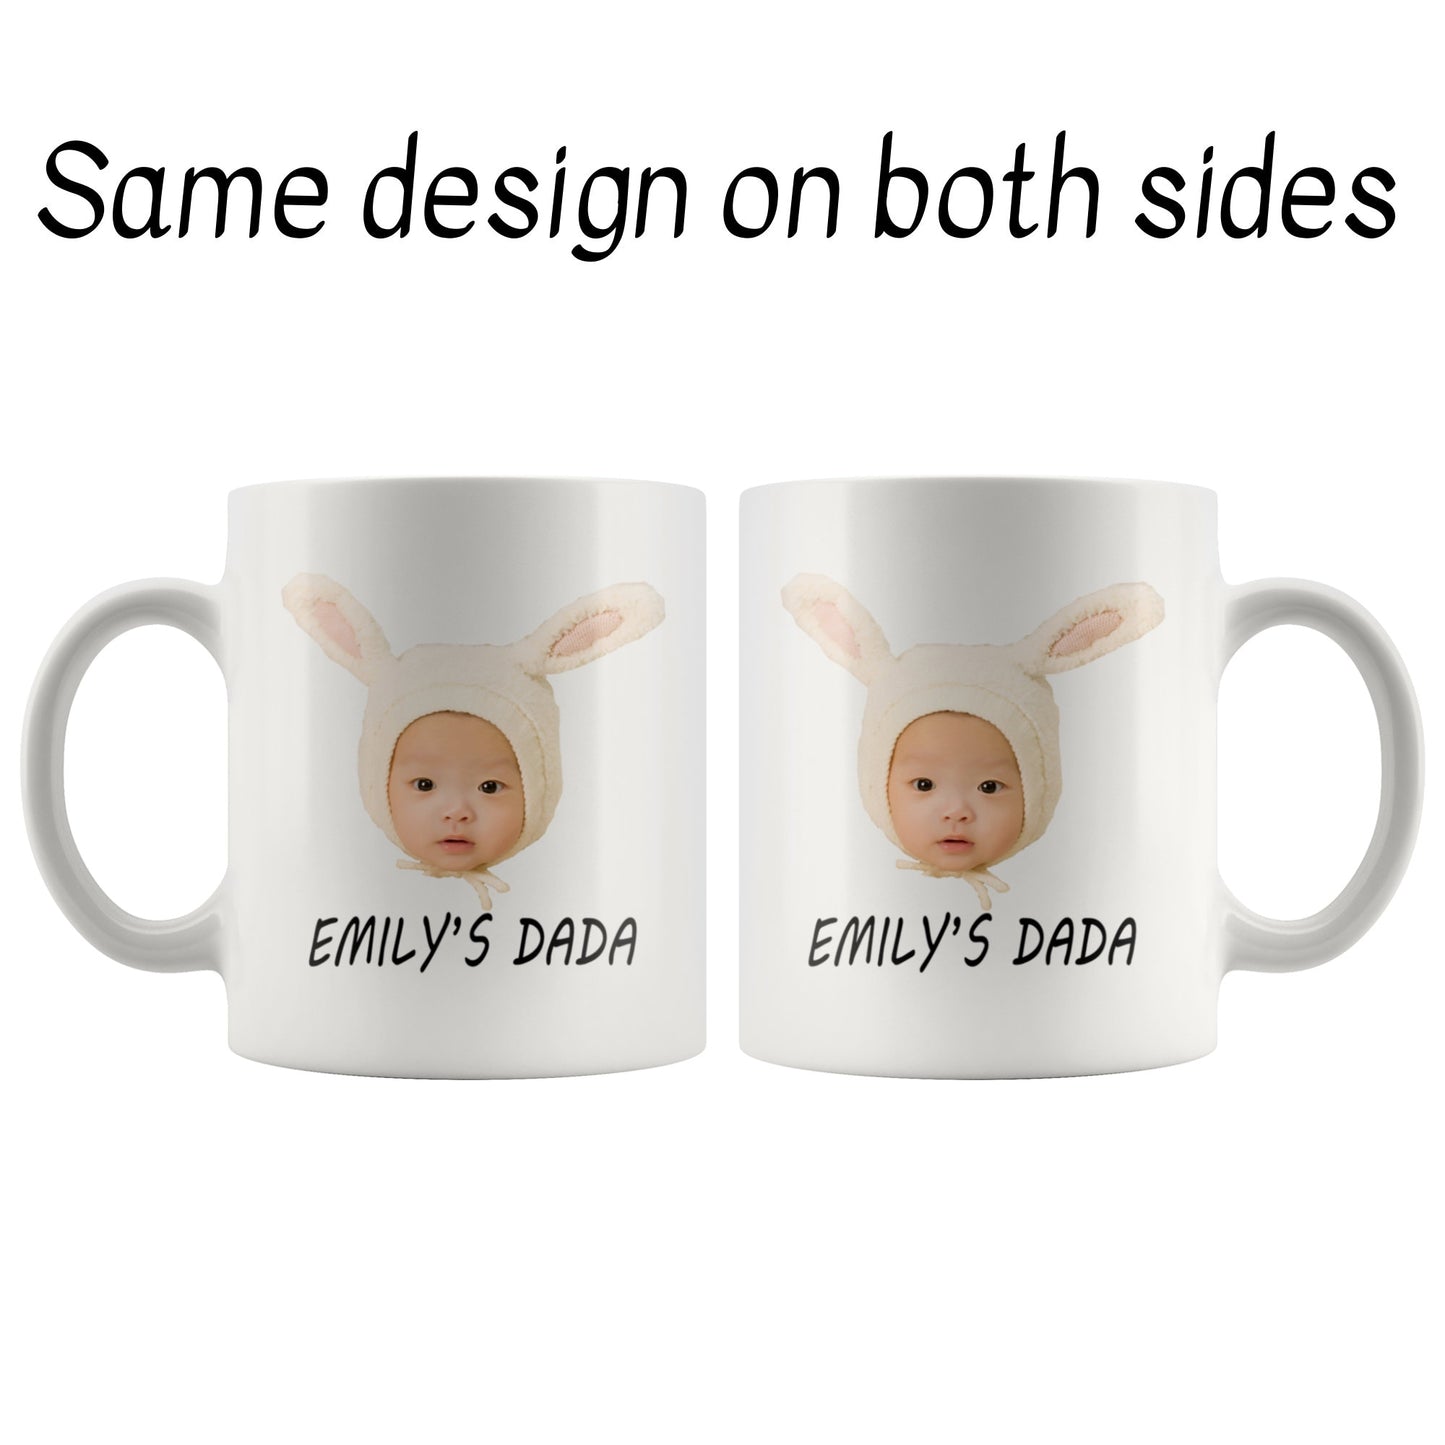 Baby Photo Mug pciture on both sides